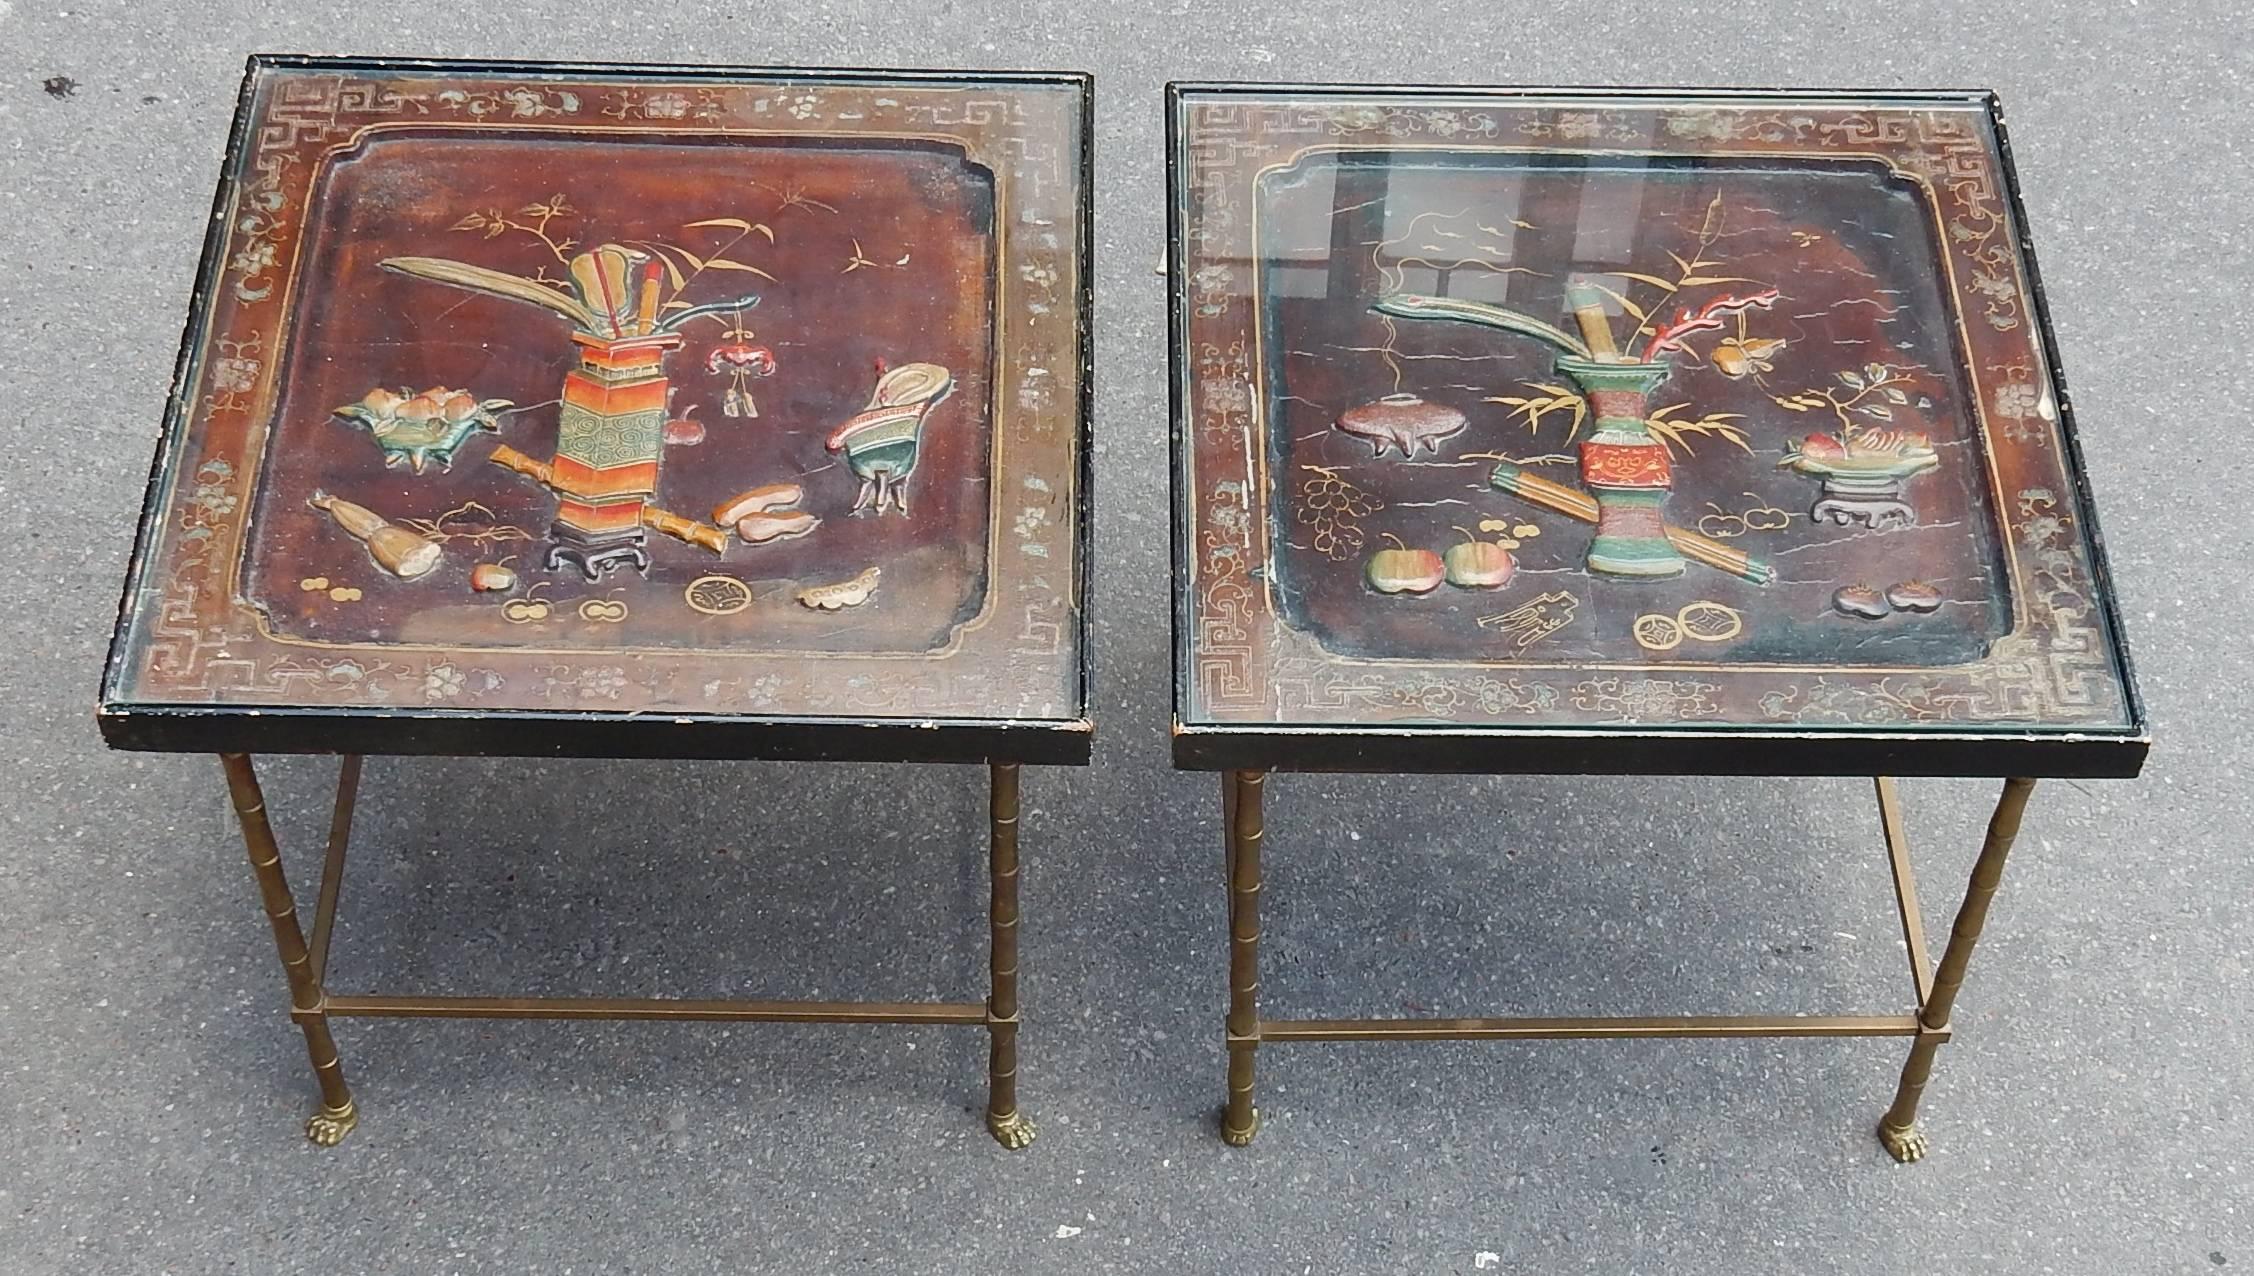 Paar von Ende des Sofas Bronze mit Beträgen Bambus deco endend durch Füße gleichen Löwenfüße. Aufsatz mit Früchten und Urne aus lackiertem Porzellan und Glas, um 1950-1970.